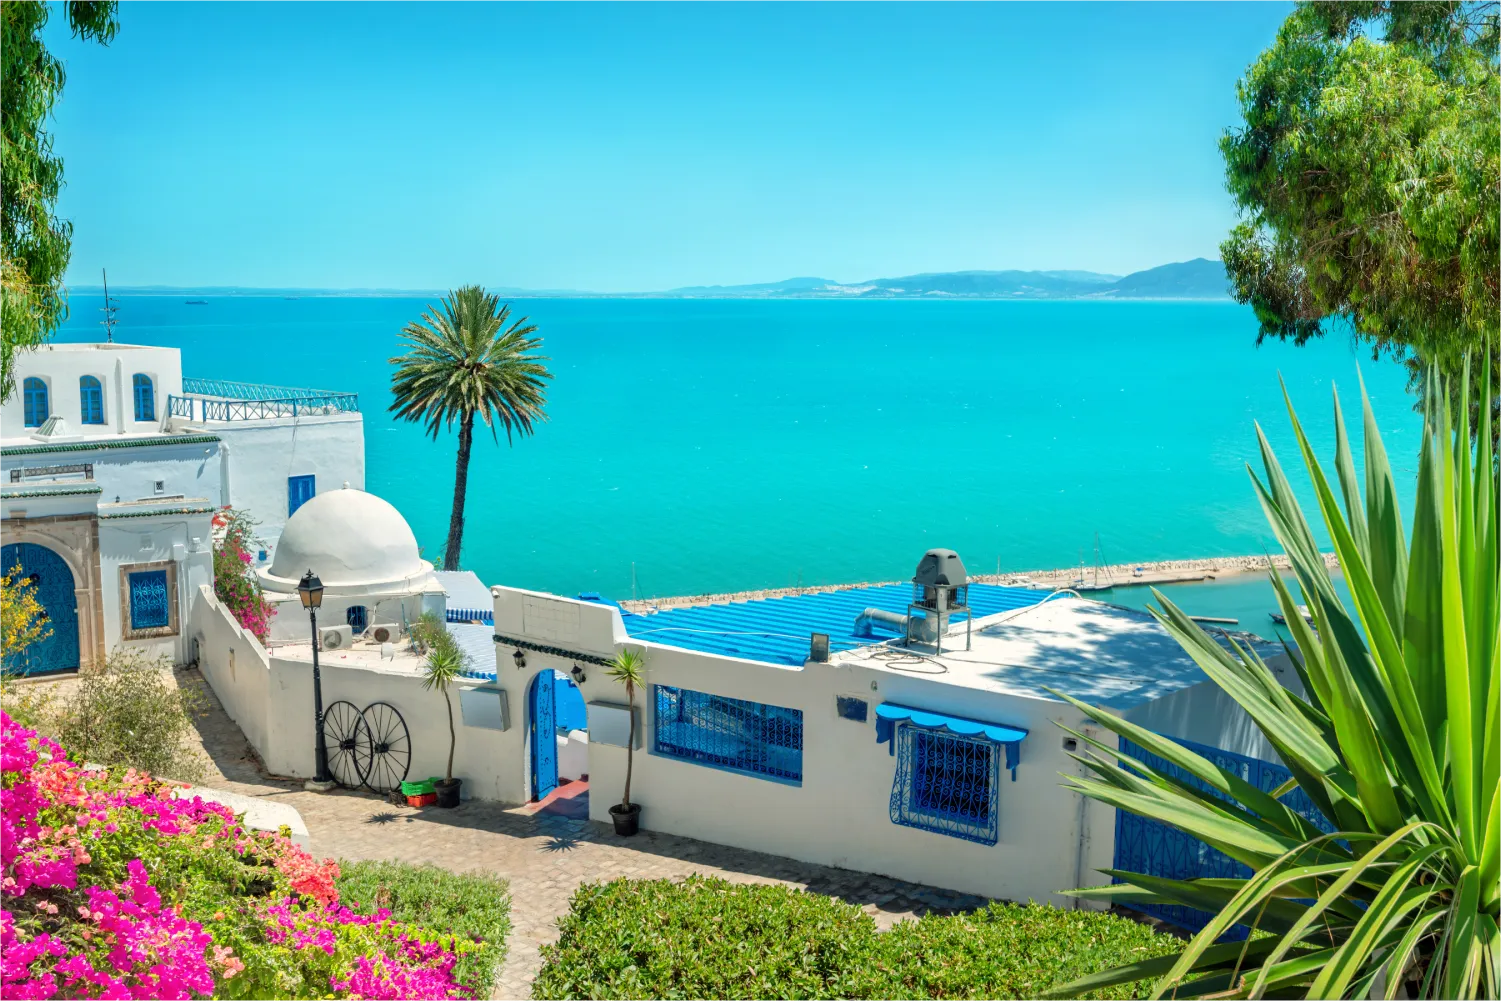 Panoramalandschaft mit typischen weiß-blauen Häusern, bunten Blumen und schöner Aussicht auf das Meer in Tunis